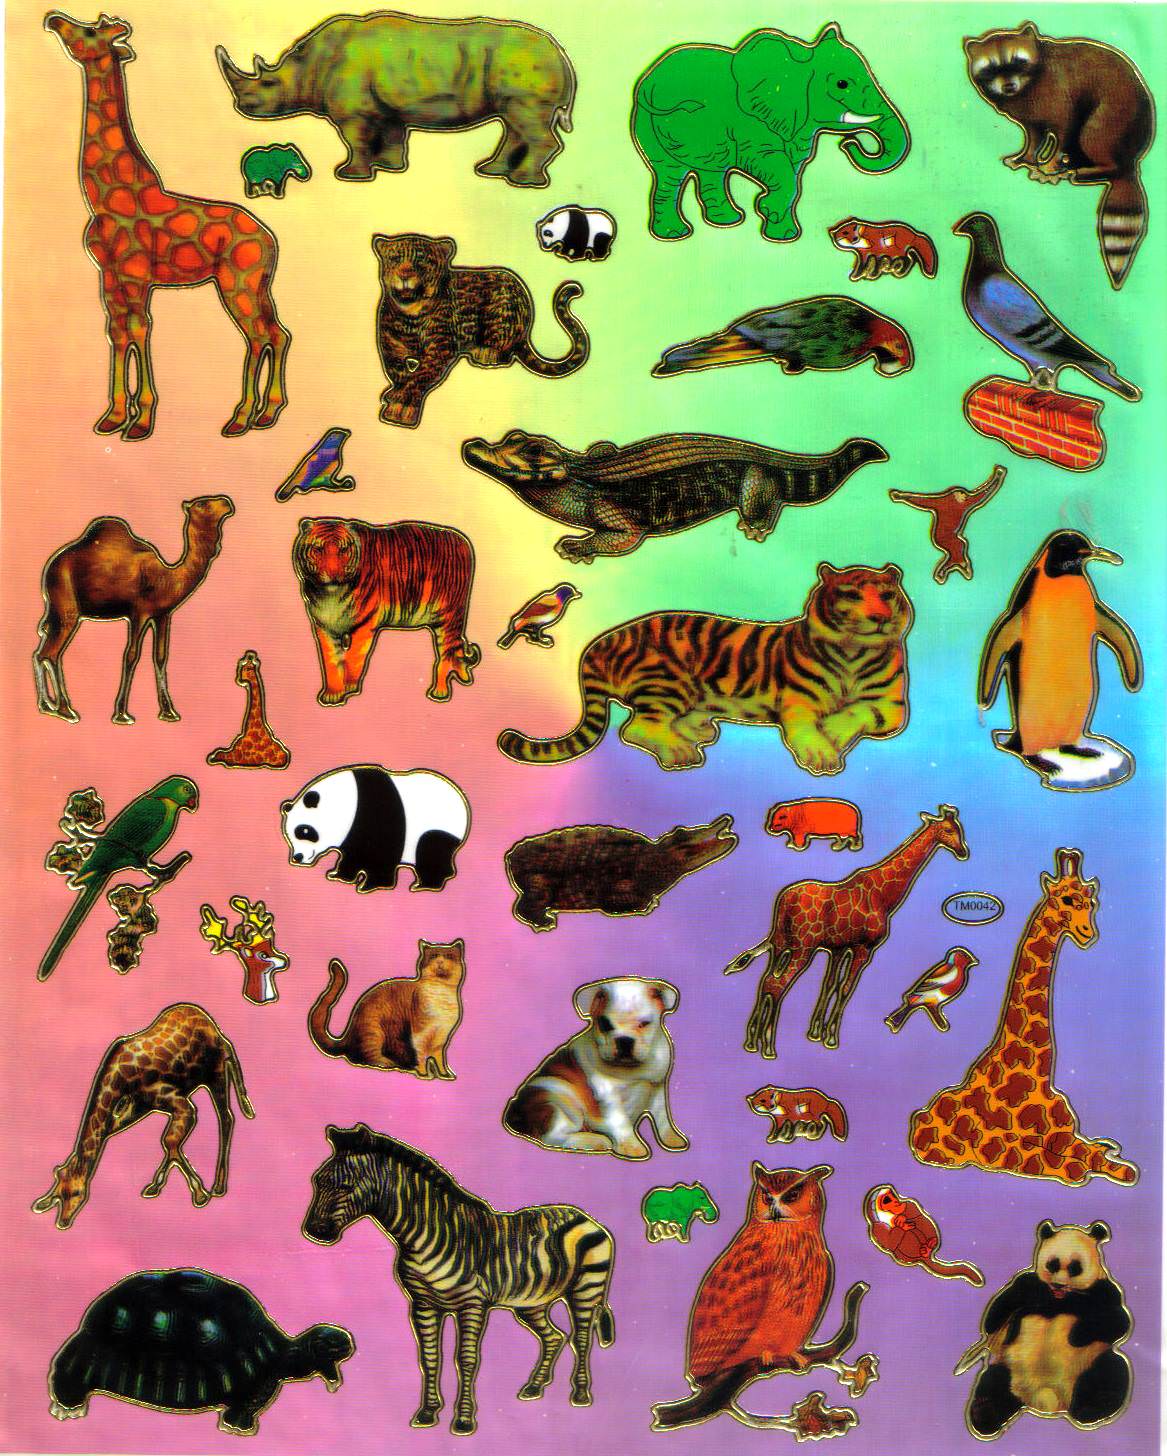 Stickers Enfant Bébés Animaux 9x17cm - stickers- Animaux - MaGommette